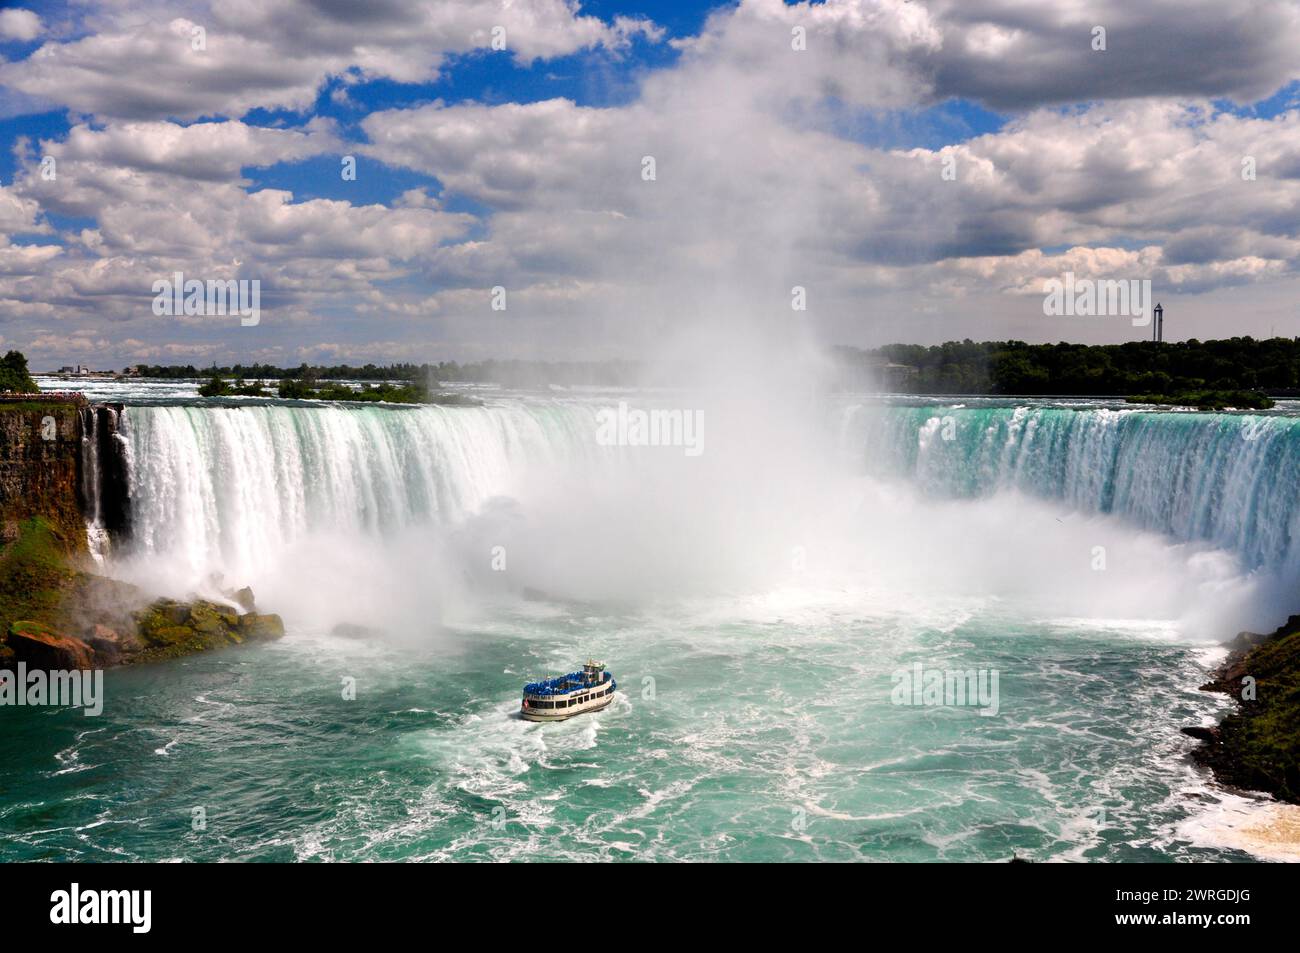 22. Juli 2015 - Niagarafälle, Ontario, Kanada: Blick auf die berühmten Horseshoe Falls und das Tourboot Maid of the Mist. Stockfoto